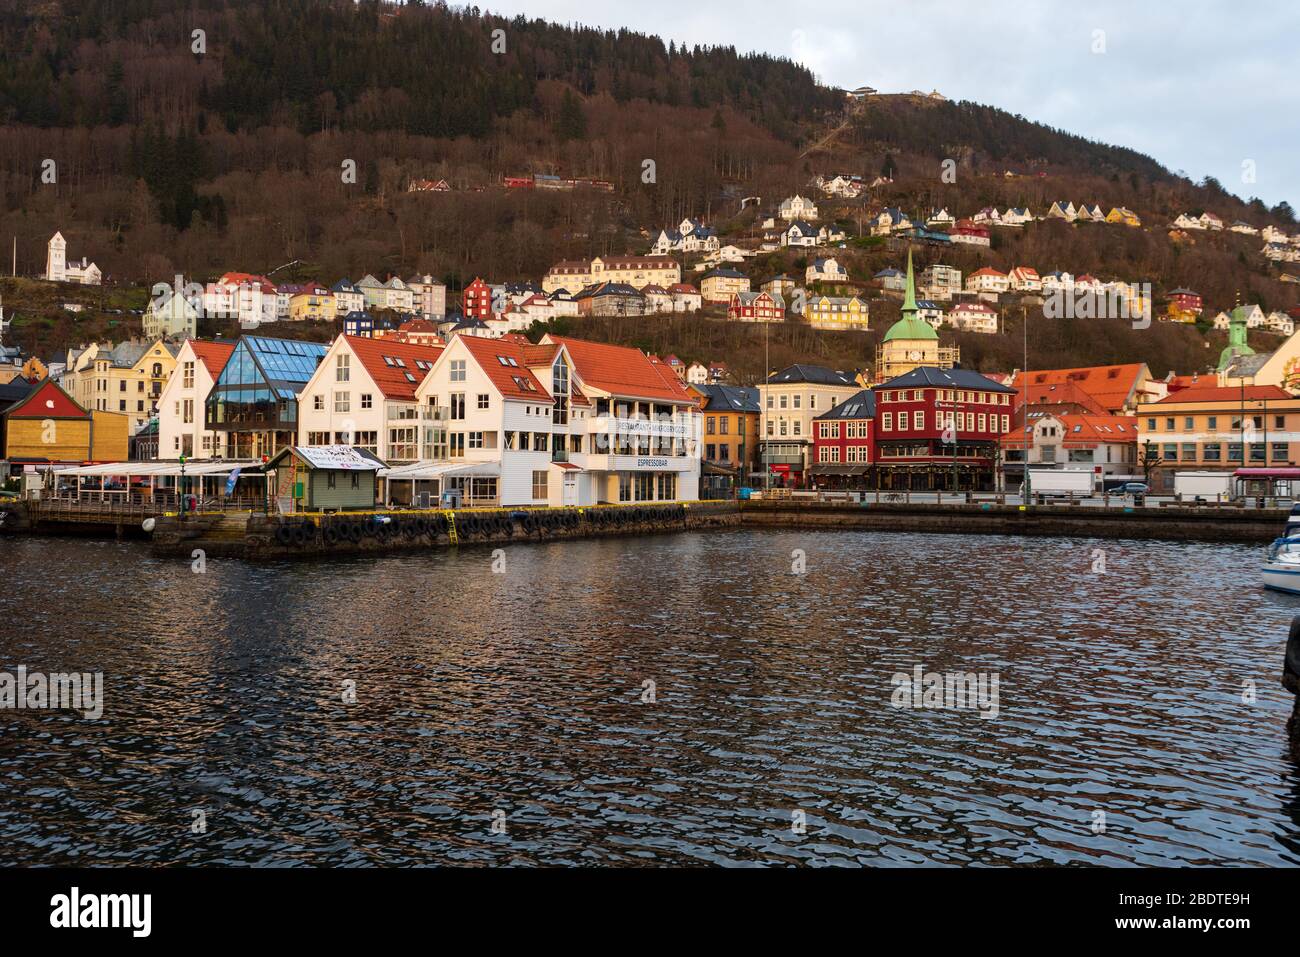 Ein beliebtes Touristenziel der Hafen von Bergen in Norwegen während der Covid-19-Epidemie 2020 Osterzeit. Fløyen Berg kann hinter gesehen werden. Stockfoto